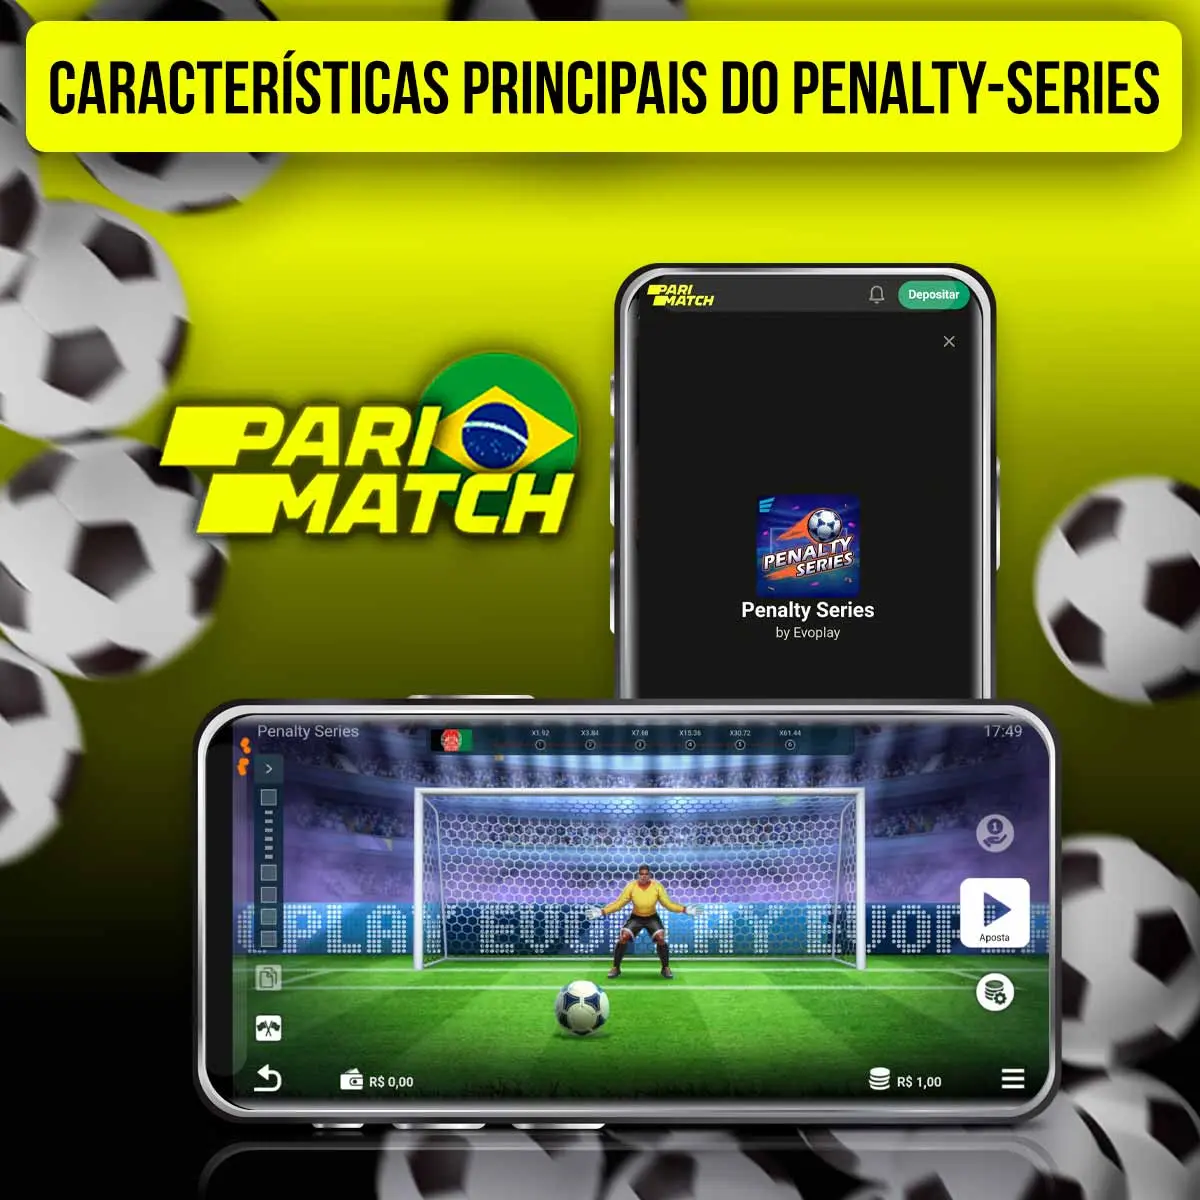 Quais são as principais características do Penalty-Series Parimatch